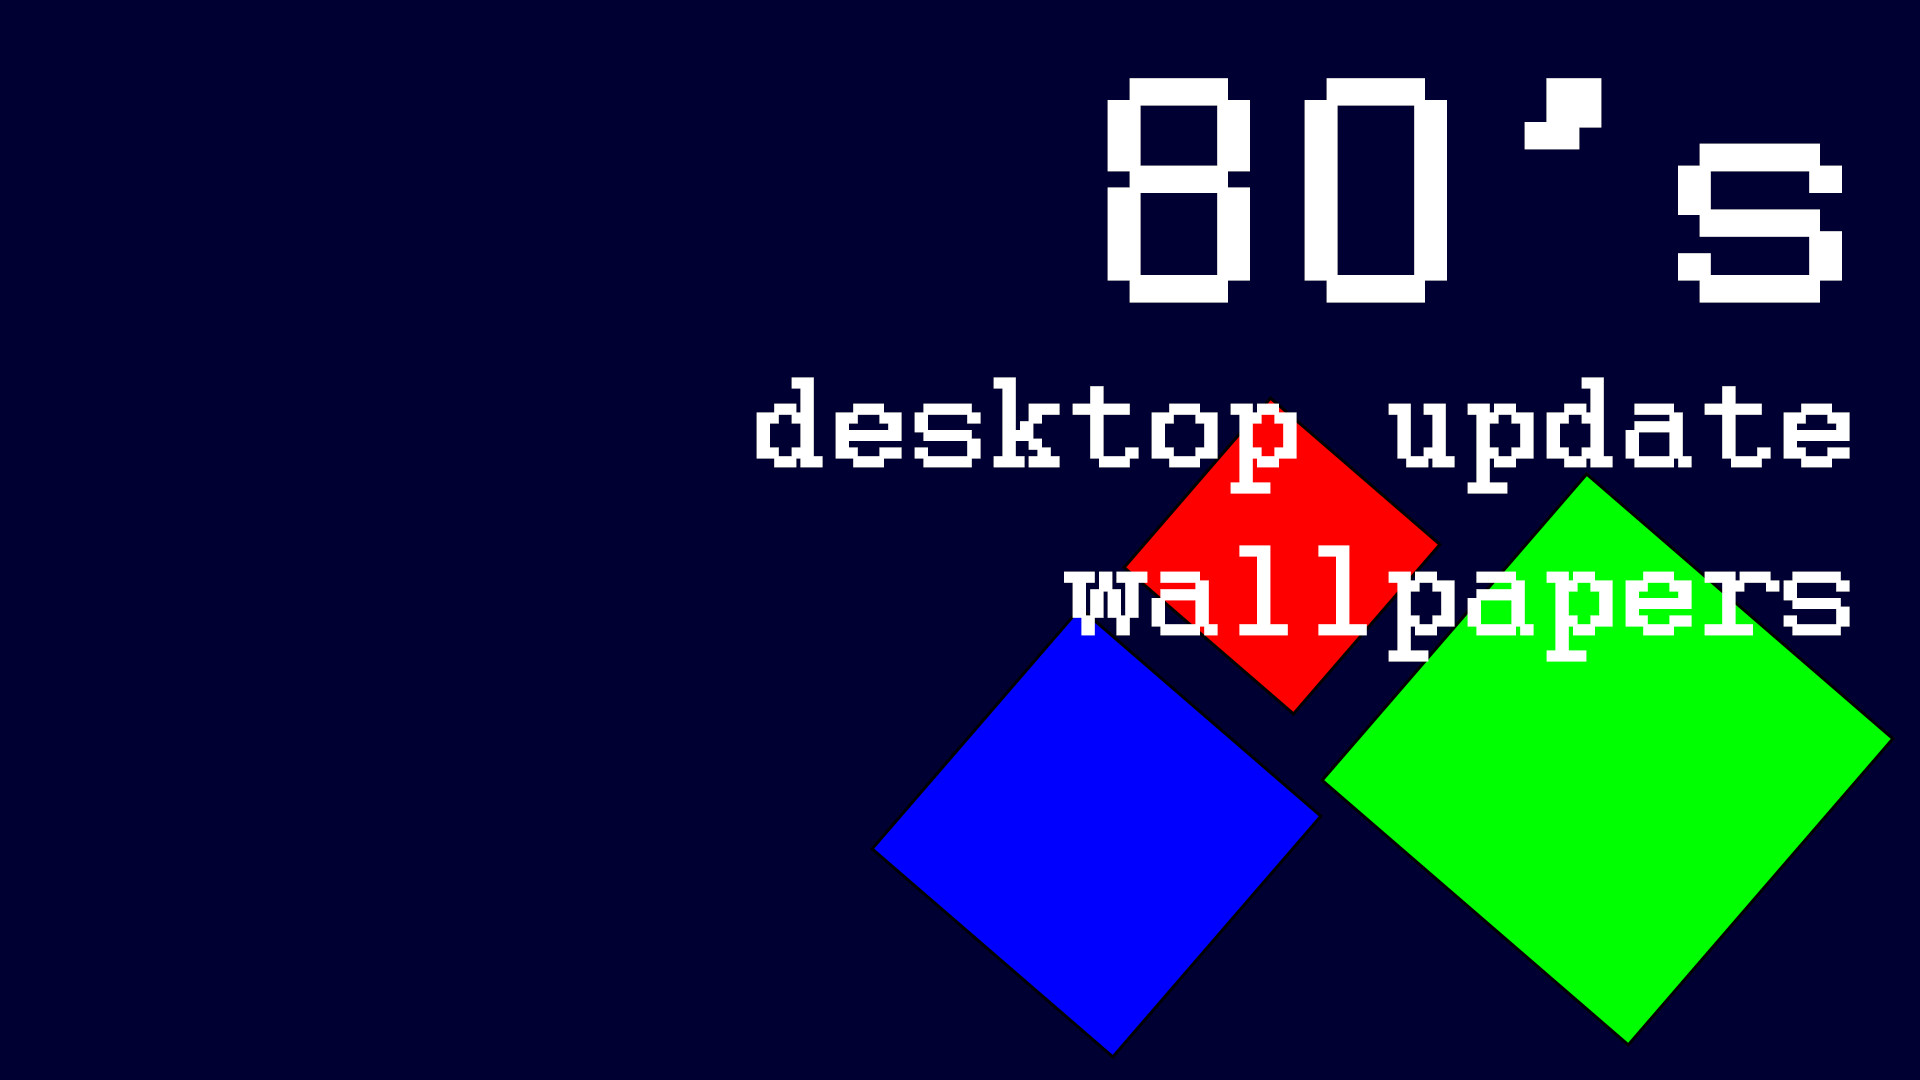 80's desktop update wallpapers screenshot